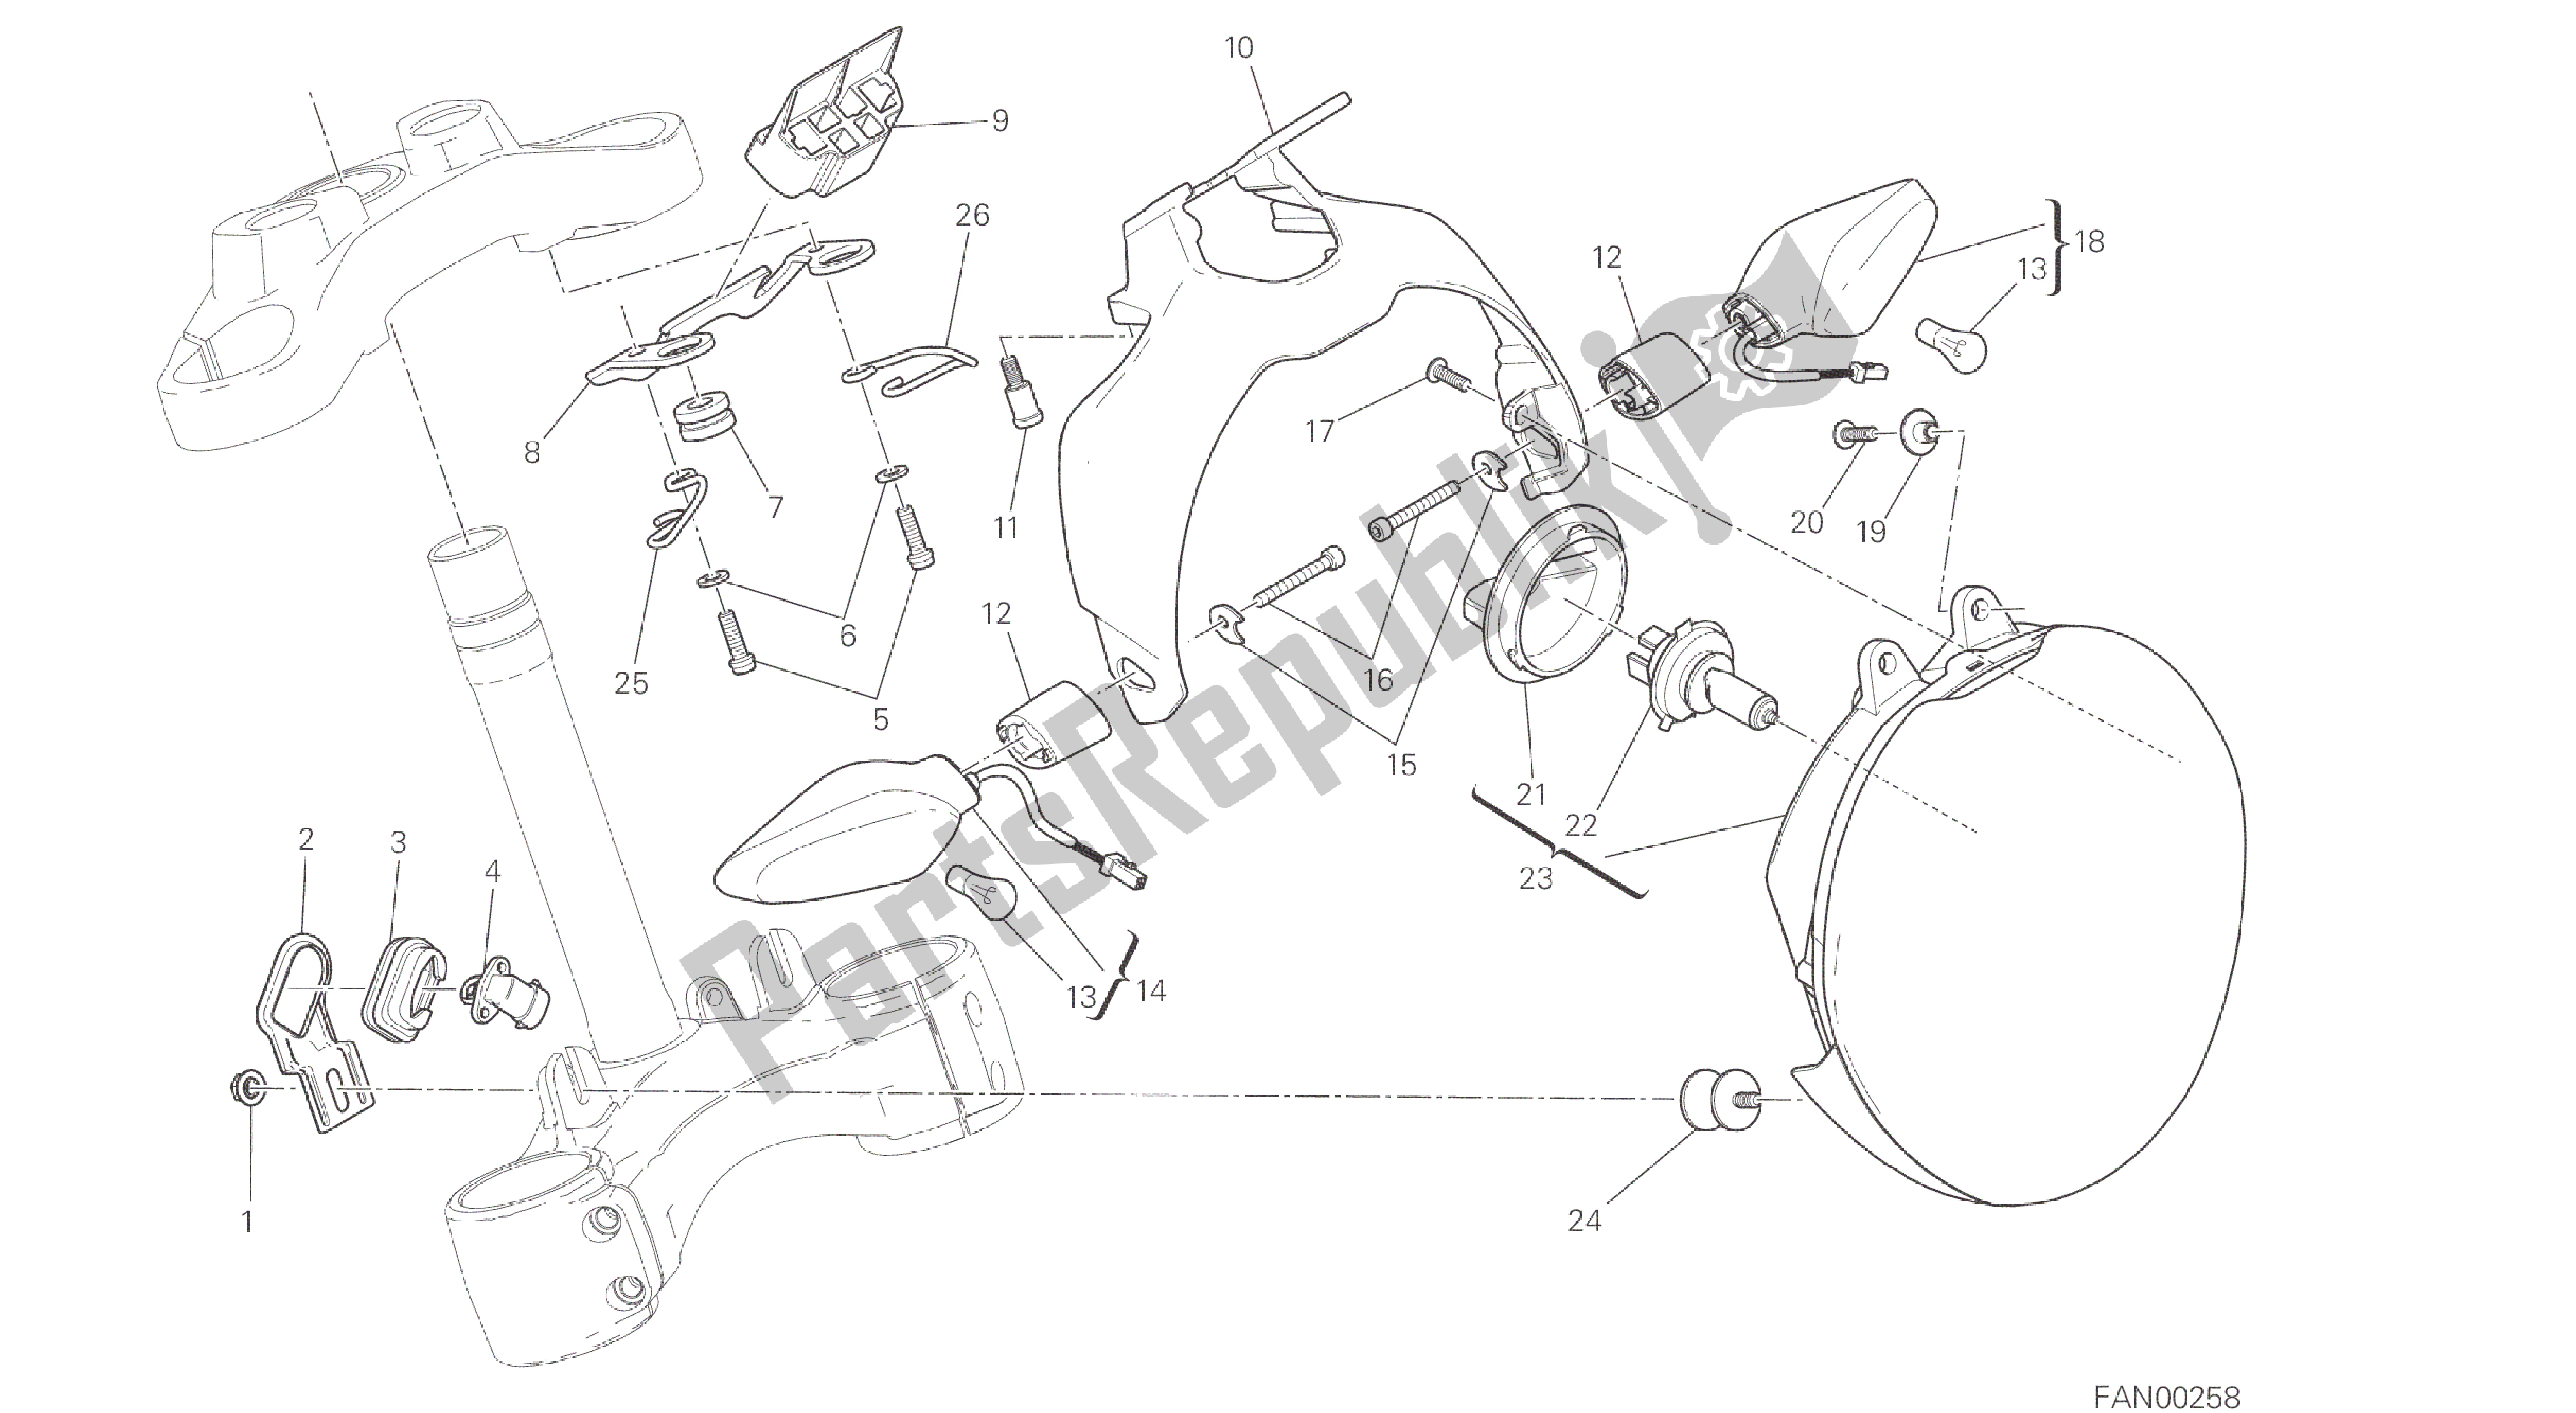 Wszystkie części do Rysunek 020 - Reflektor [mod: M 821; Xst: Aus, Eur, Fra, Jap] Grupa Elektryczna Ducati Monster 821 2014